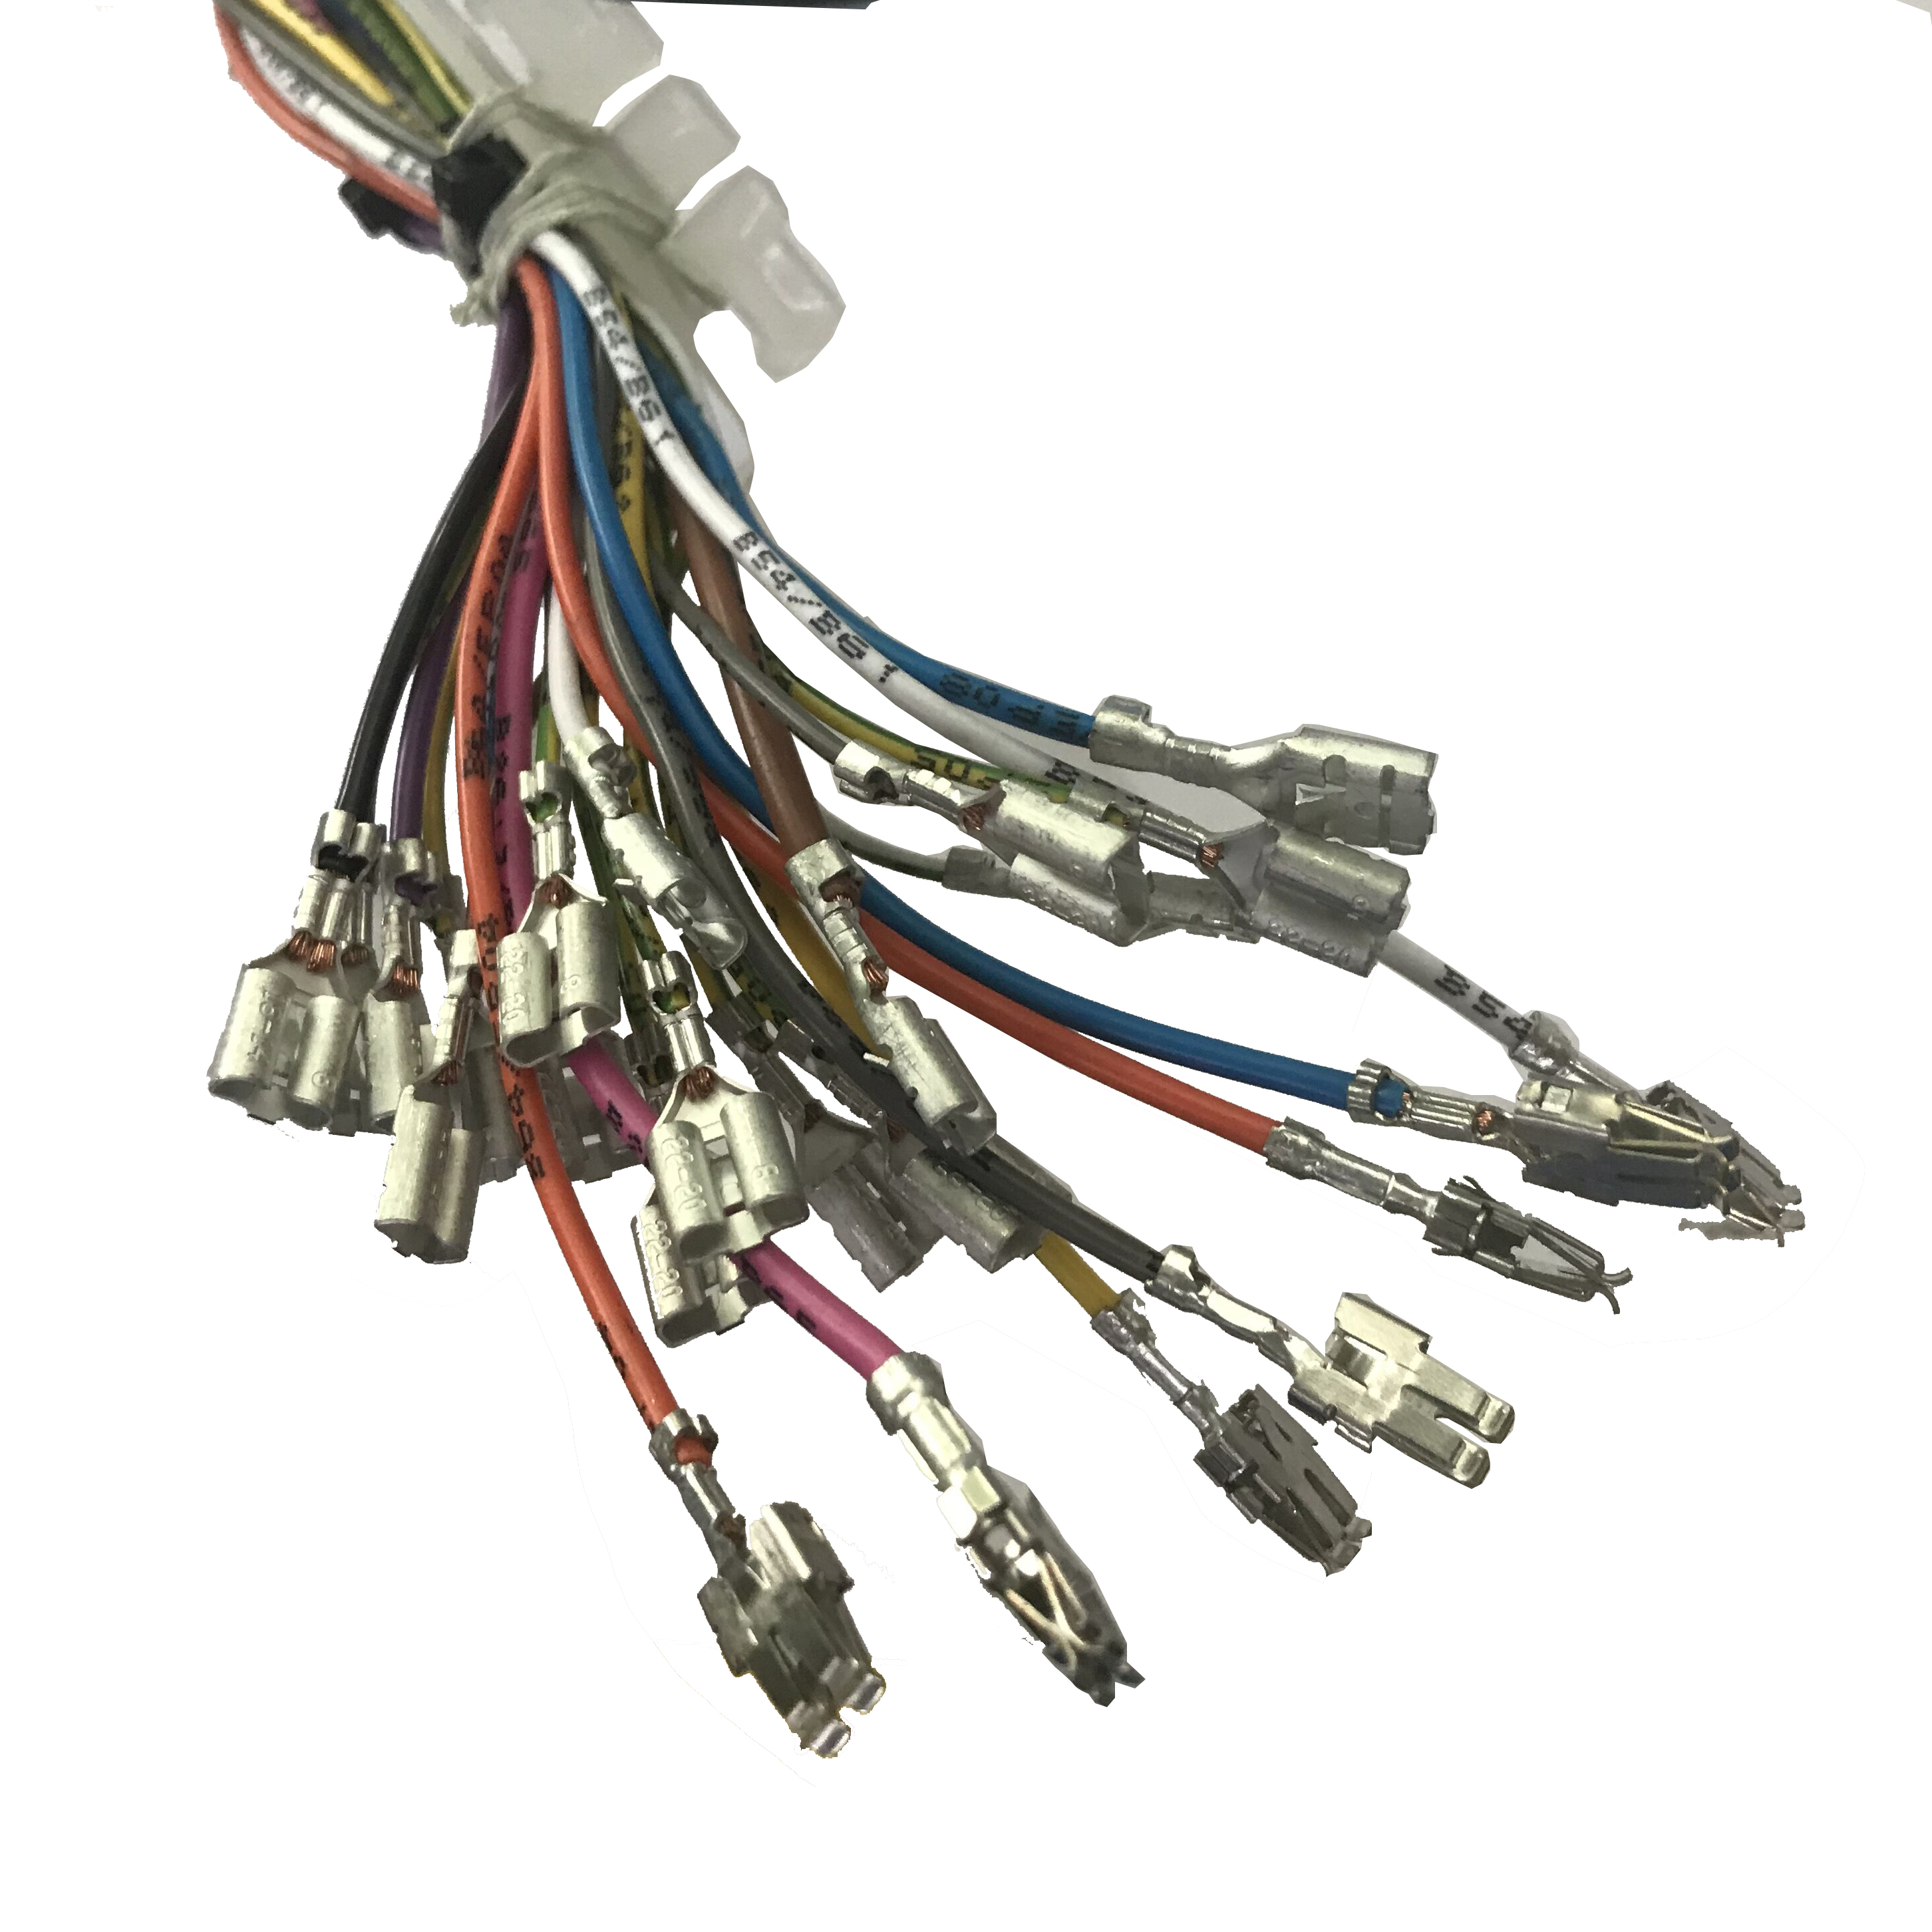 Industrielt ledningsnet tilpasset elektronisk styrekabelnet